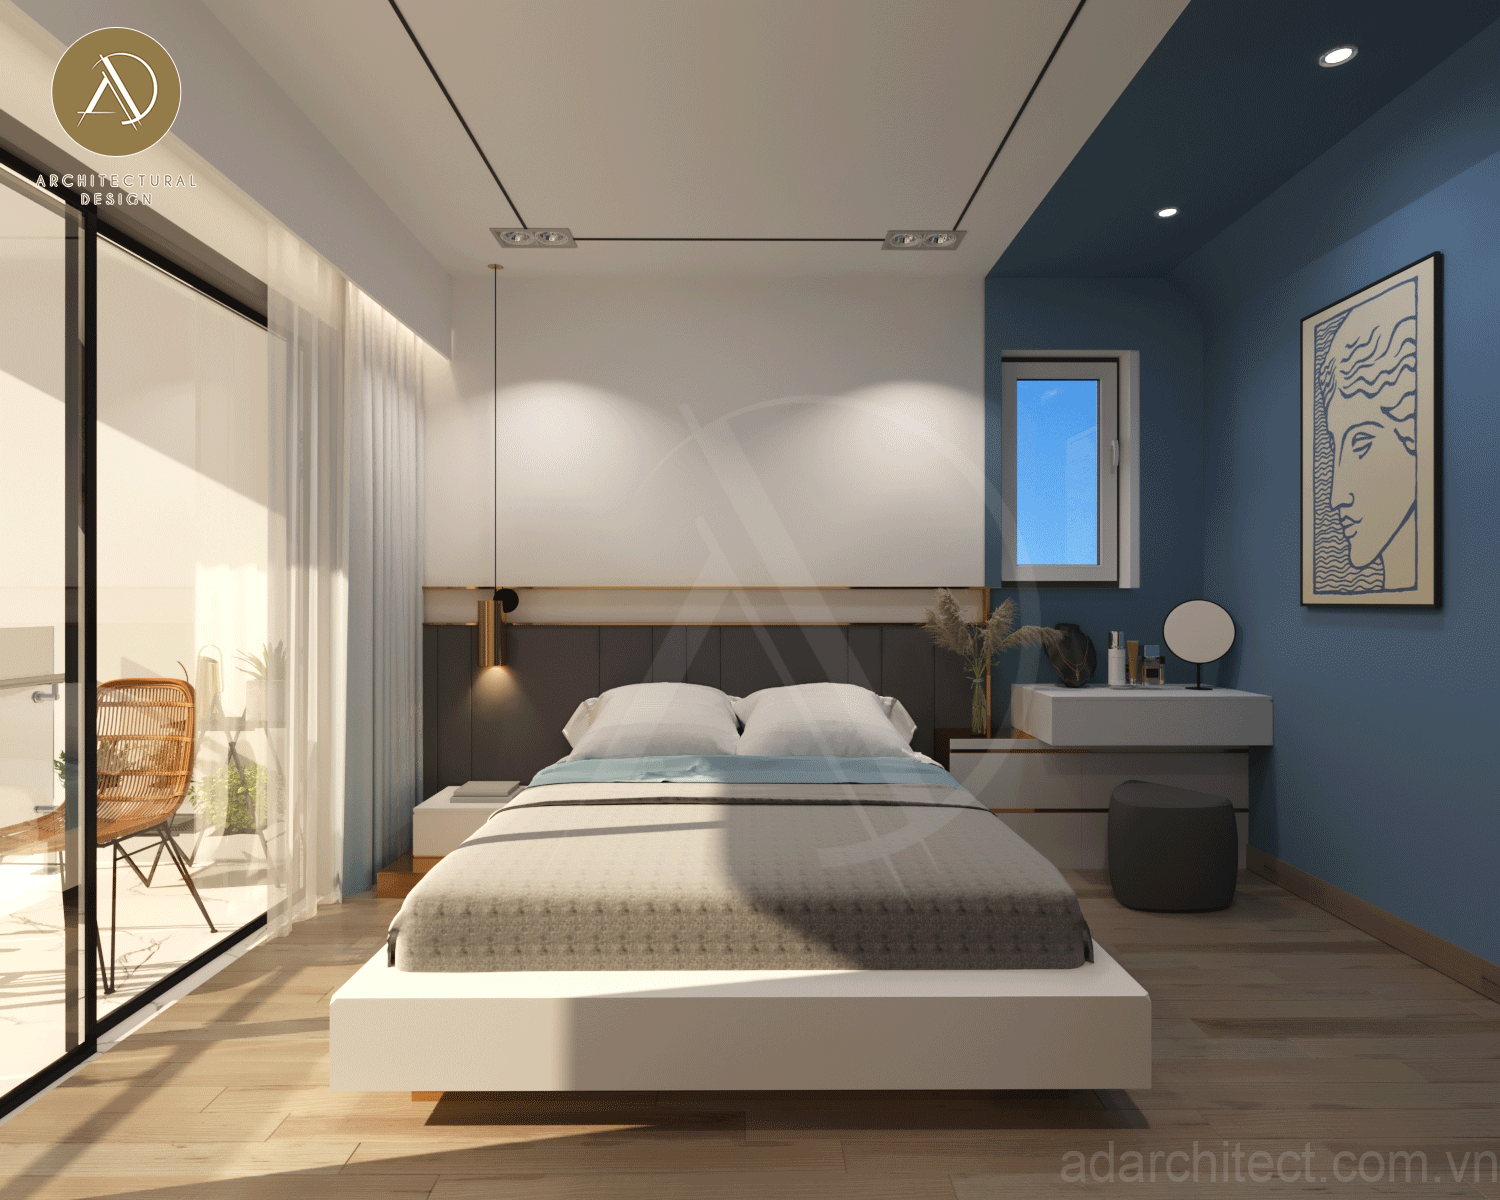 phòng ngủ có ban công thoáng mát, rèm cửa tạo sự riêng tư cho thiết kế chung cư